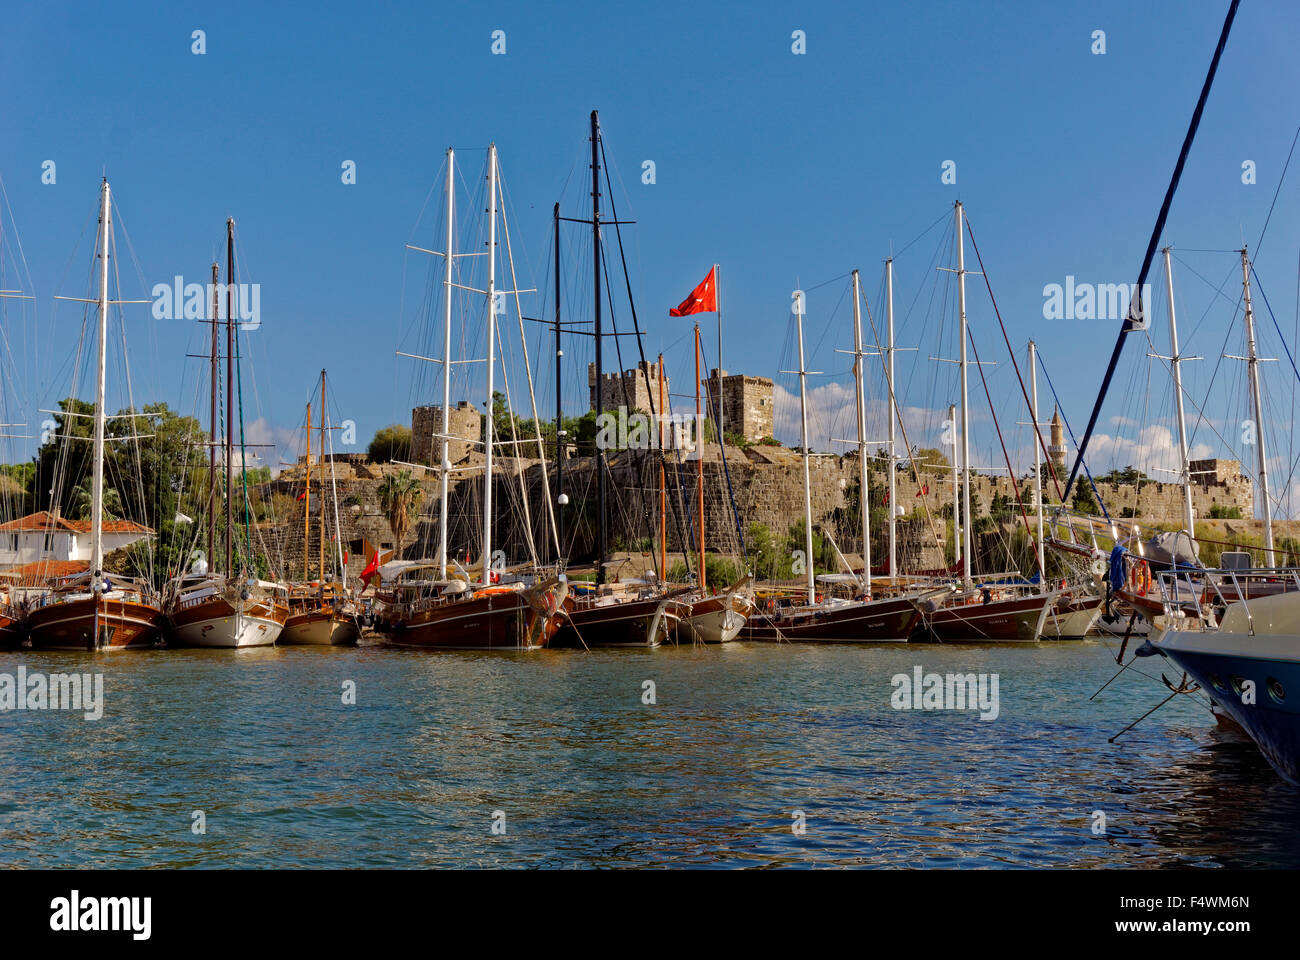 Le port de Bodrum et le château de Saint Pierre, la ville de Bodrum, Province de Mugla, Turquie Banque D'Images